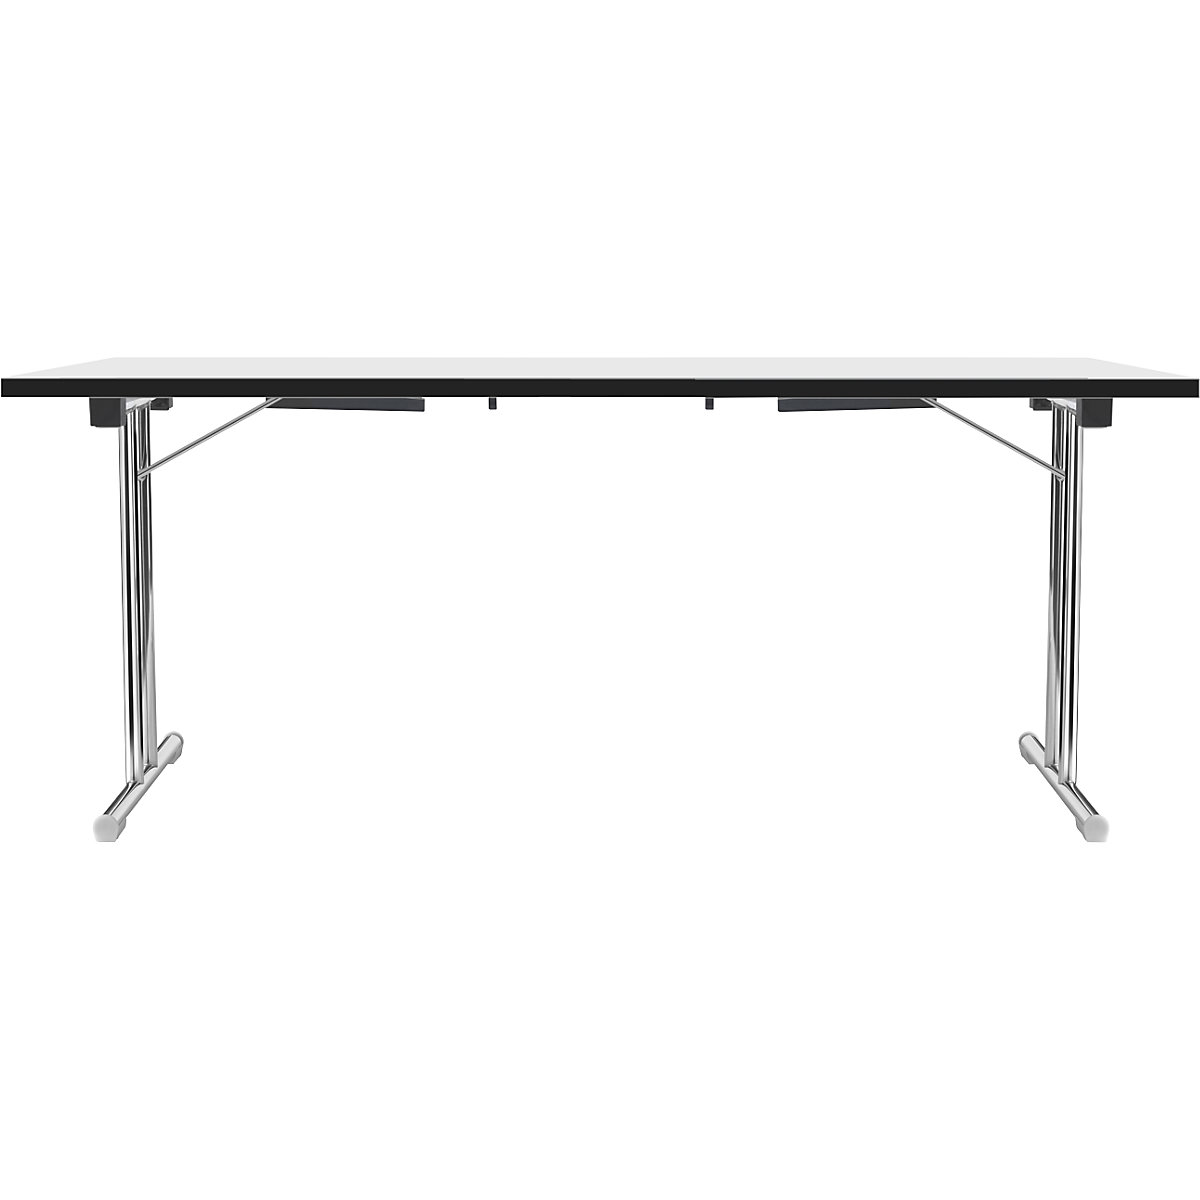 Tavolo pieghevole con basamento a T doppio, telaio in tubo tondo d'acciaio, cromato, bianco/nero, largh. x prof. 1800 x 800 mm-3